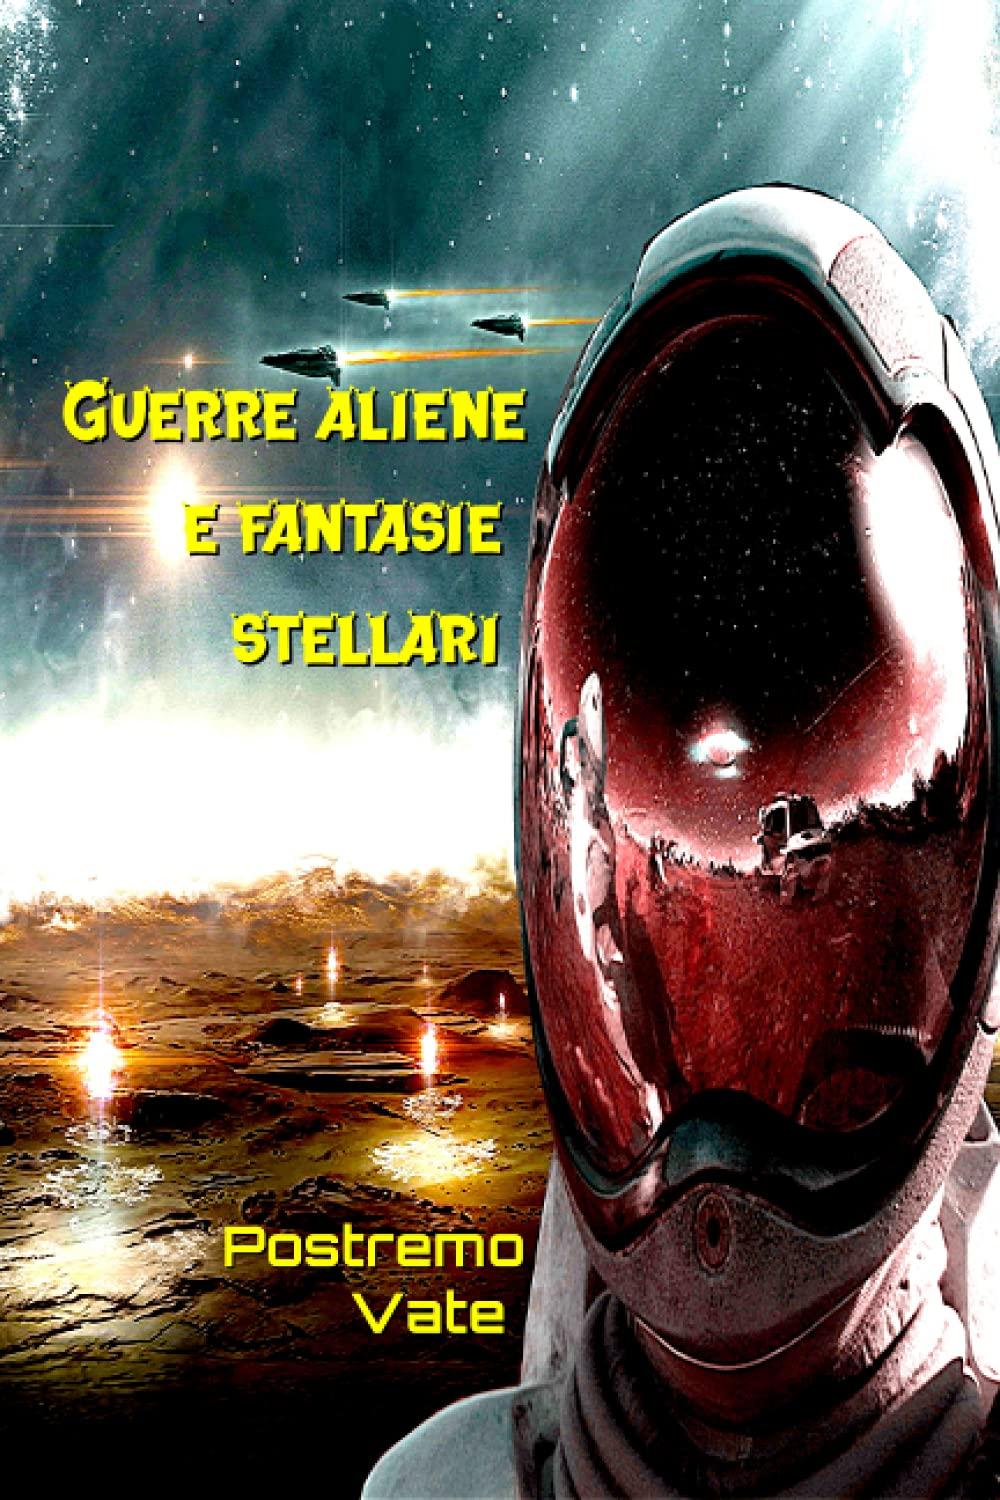 Libro "Guerre aliene e fantasie stellari" di Postremo Vate